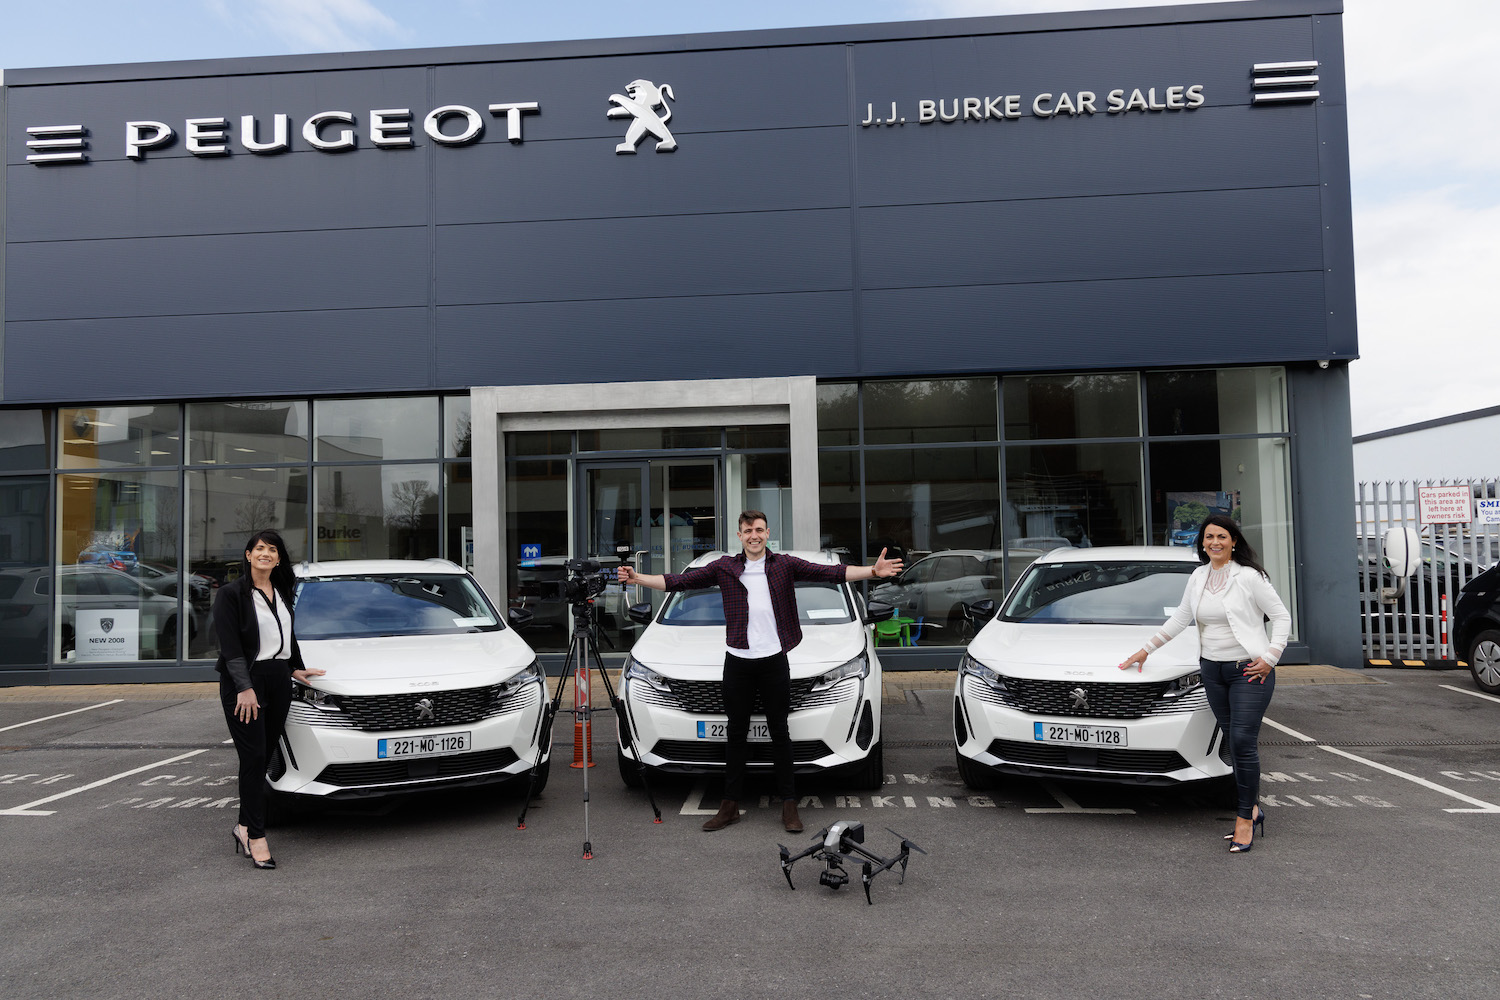 Car Industry News | JJ Burke Peugeot named official TG4 car partner | CompleteCar.ie